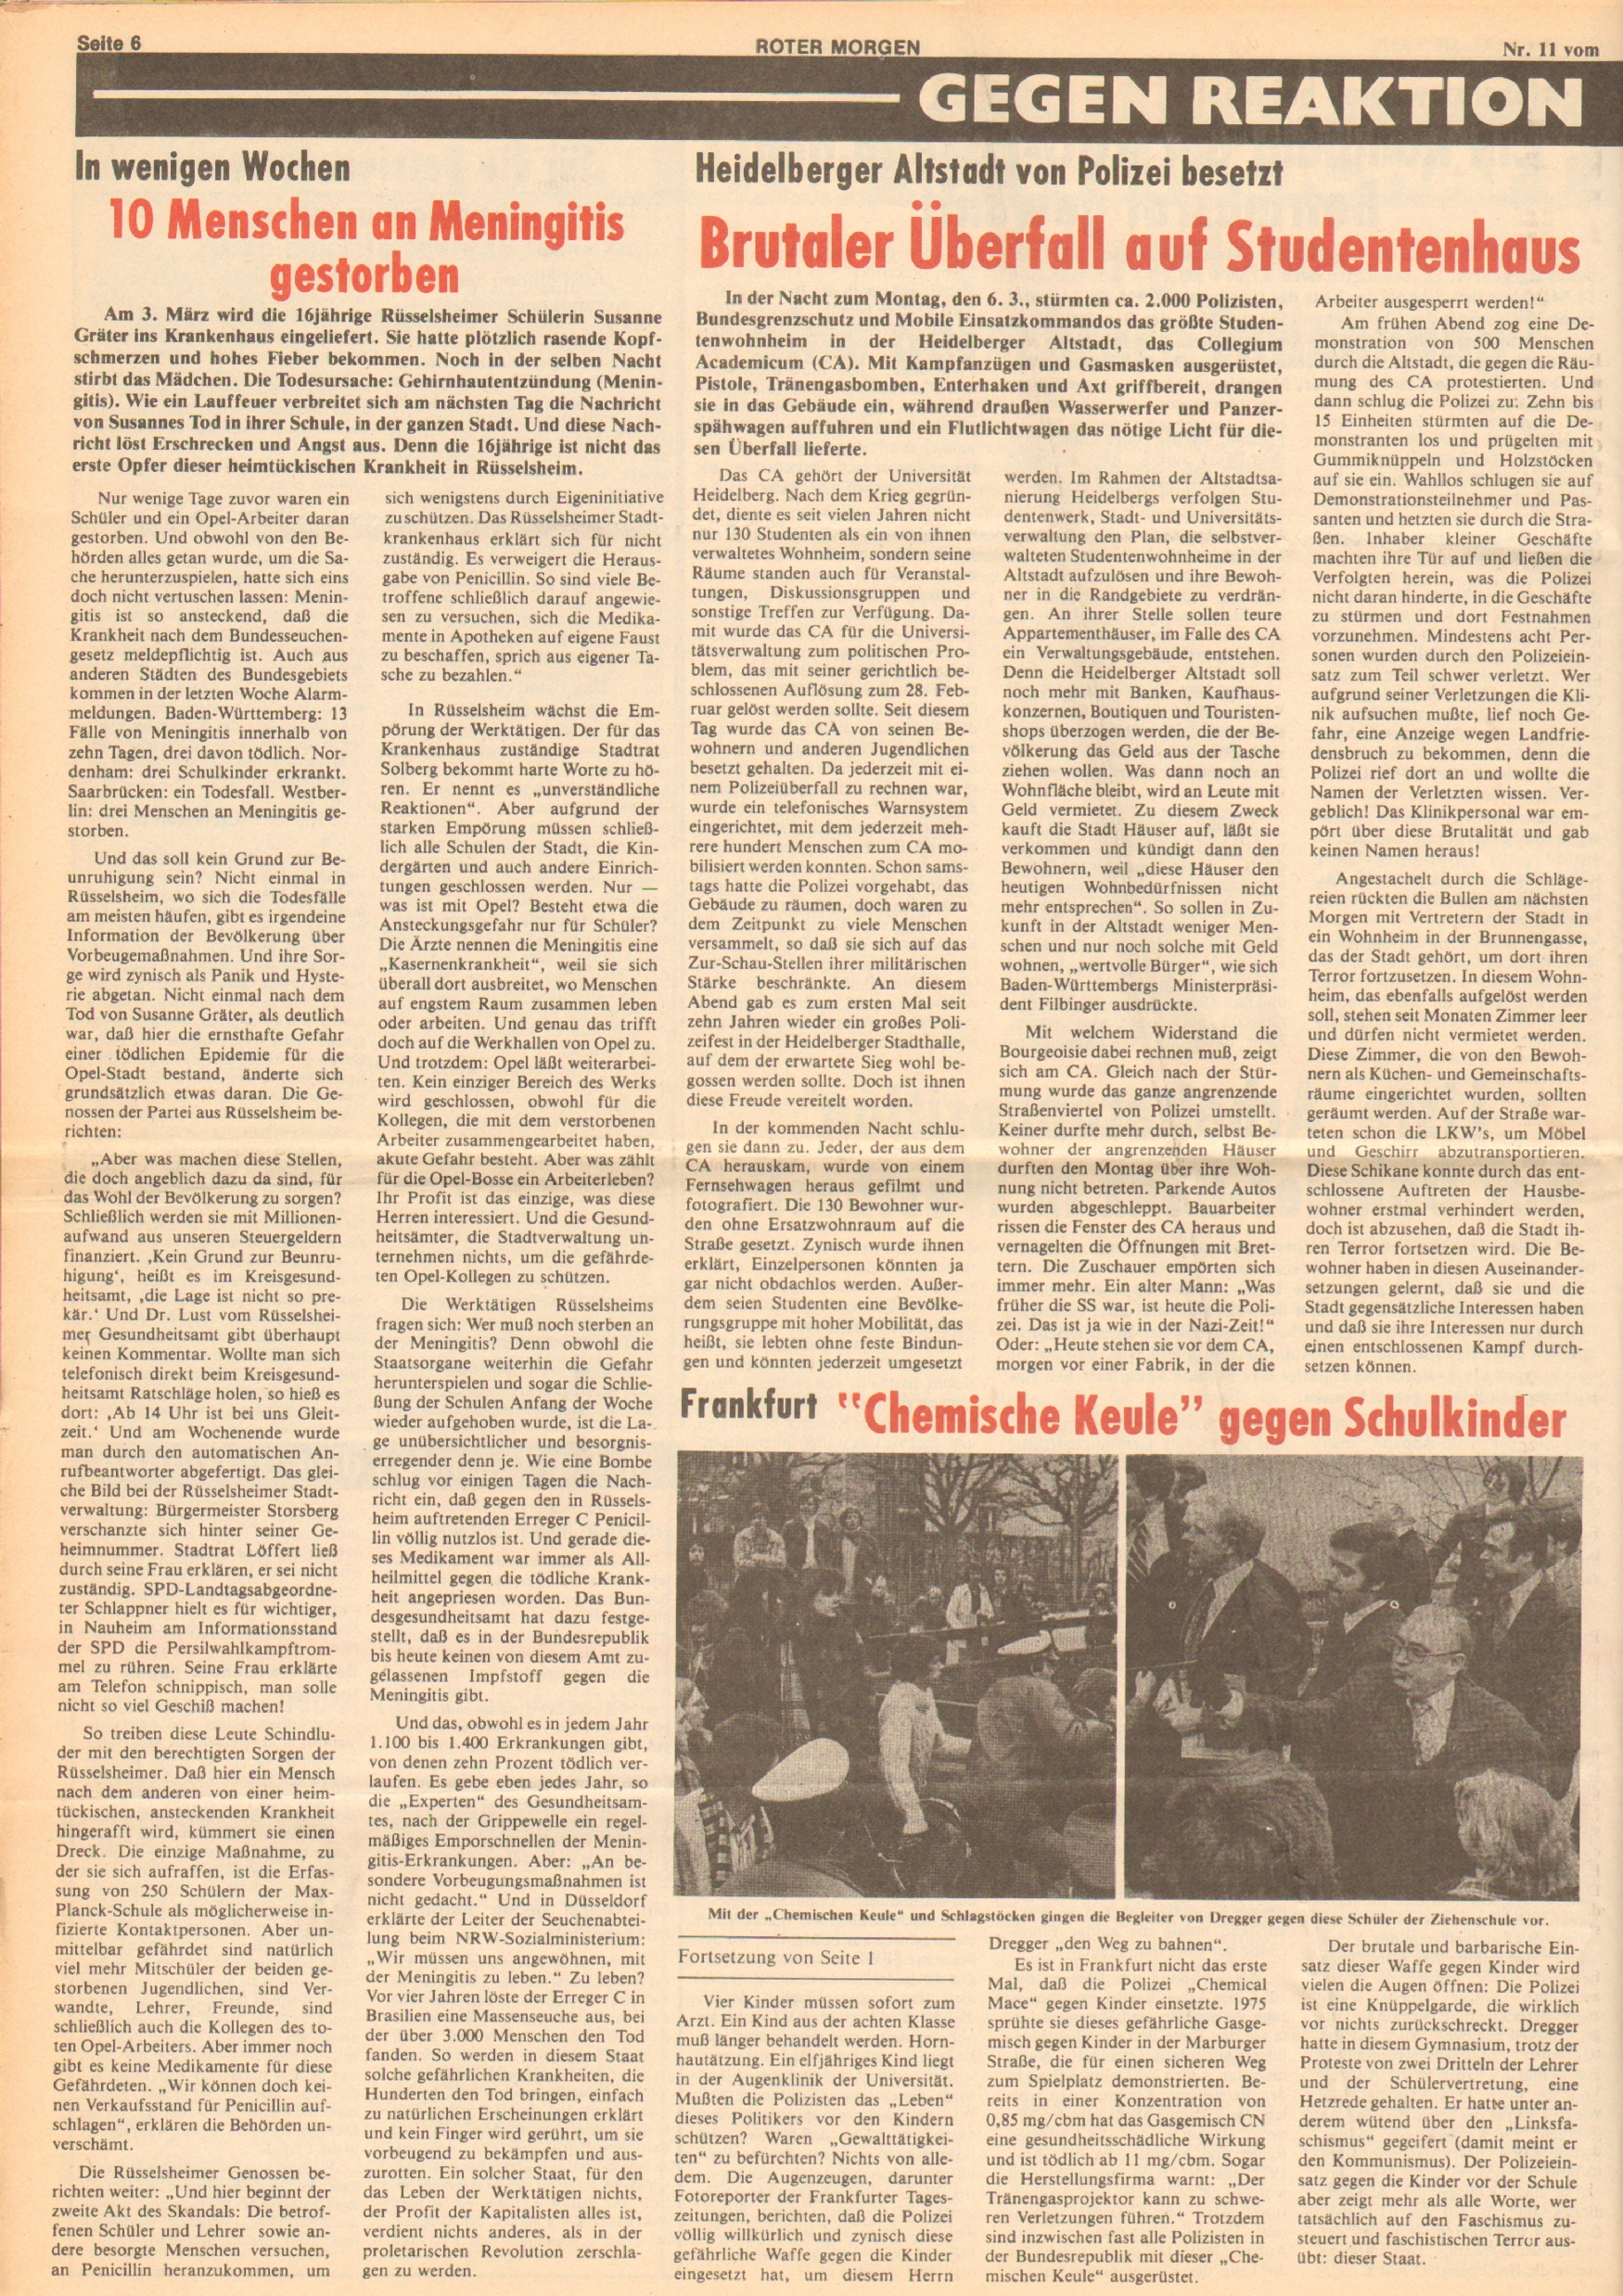 Roter Morgen, 12. Jg., 17. März 1978, Nr. 11, Seite 6